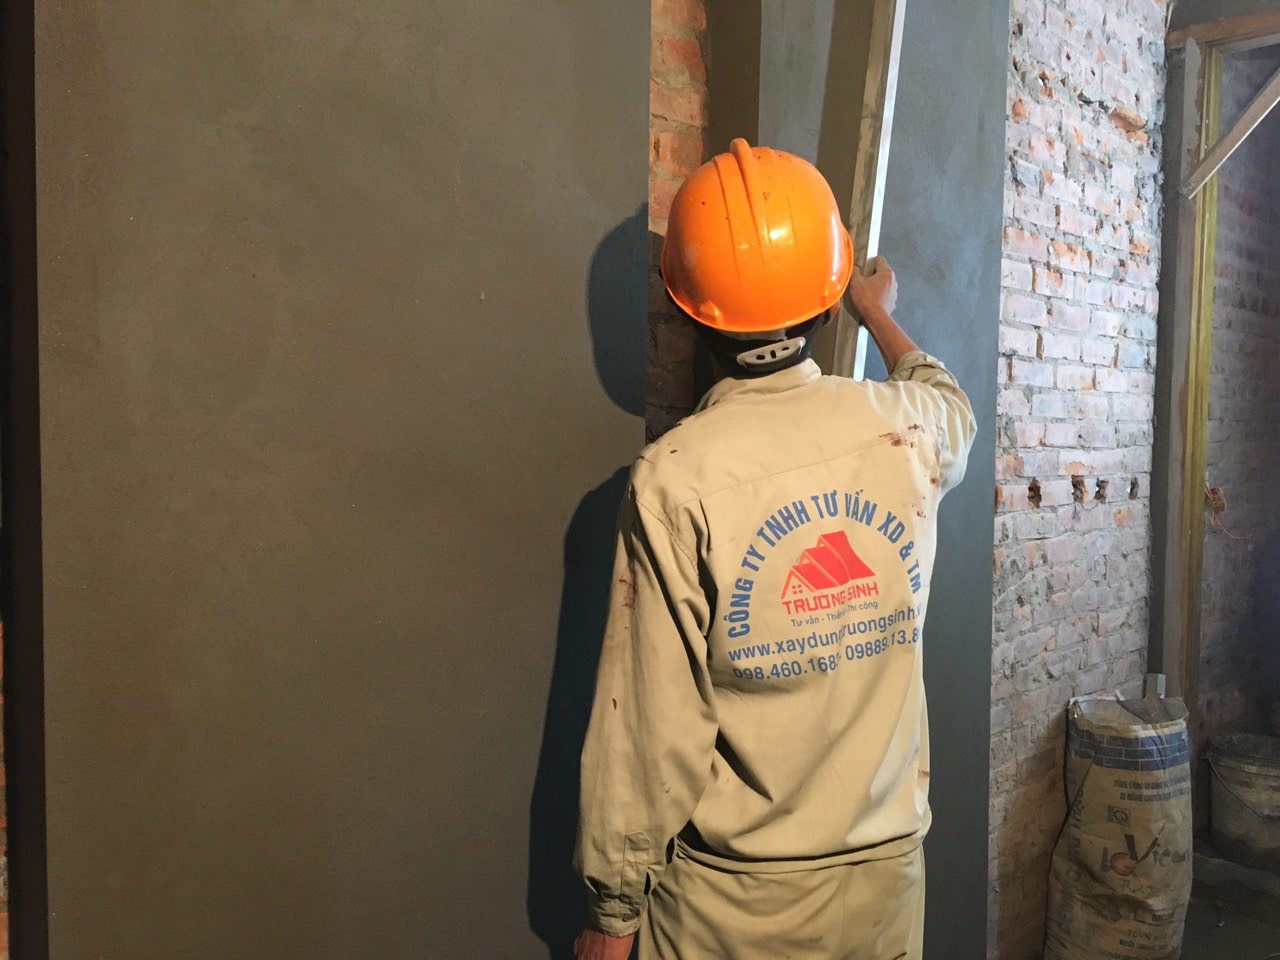 Báo giá sửa chữa nhà trọn gói tại Hà Nội 2020-Kinh nghiệm sửa nhà